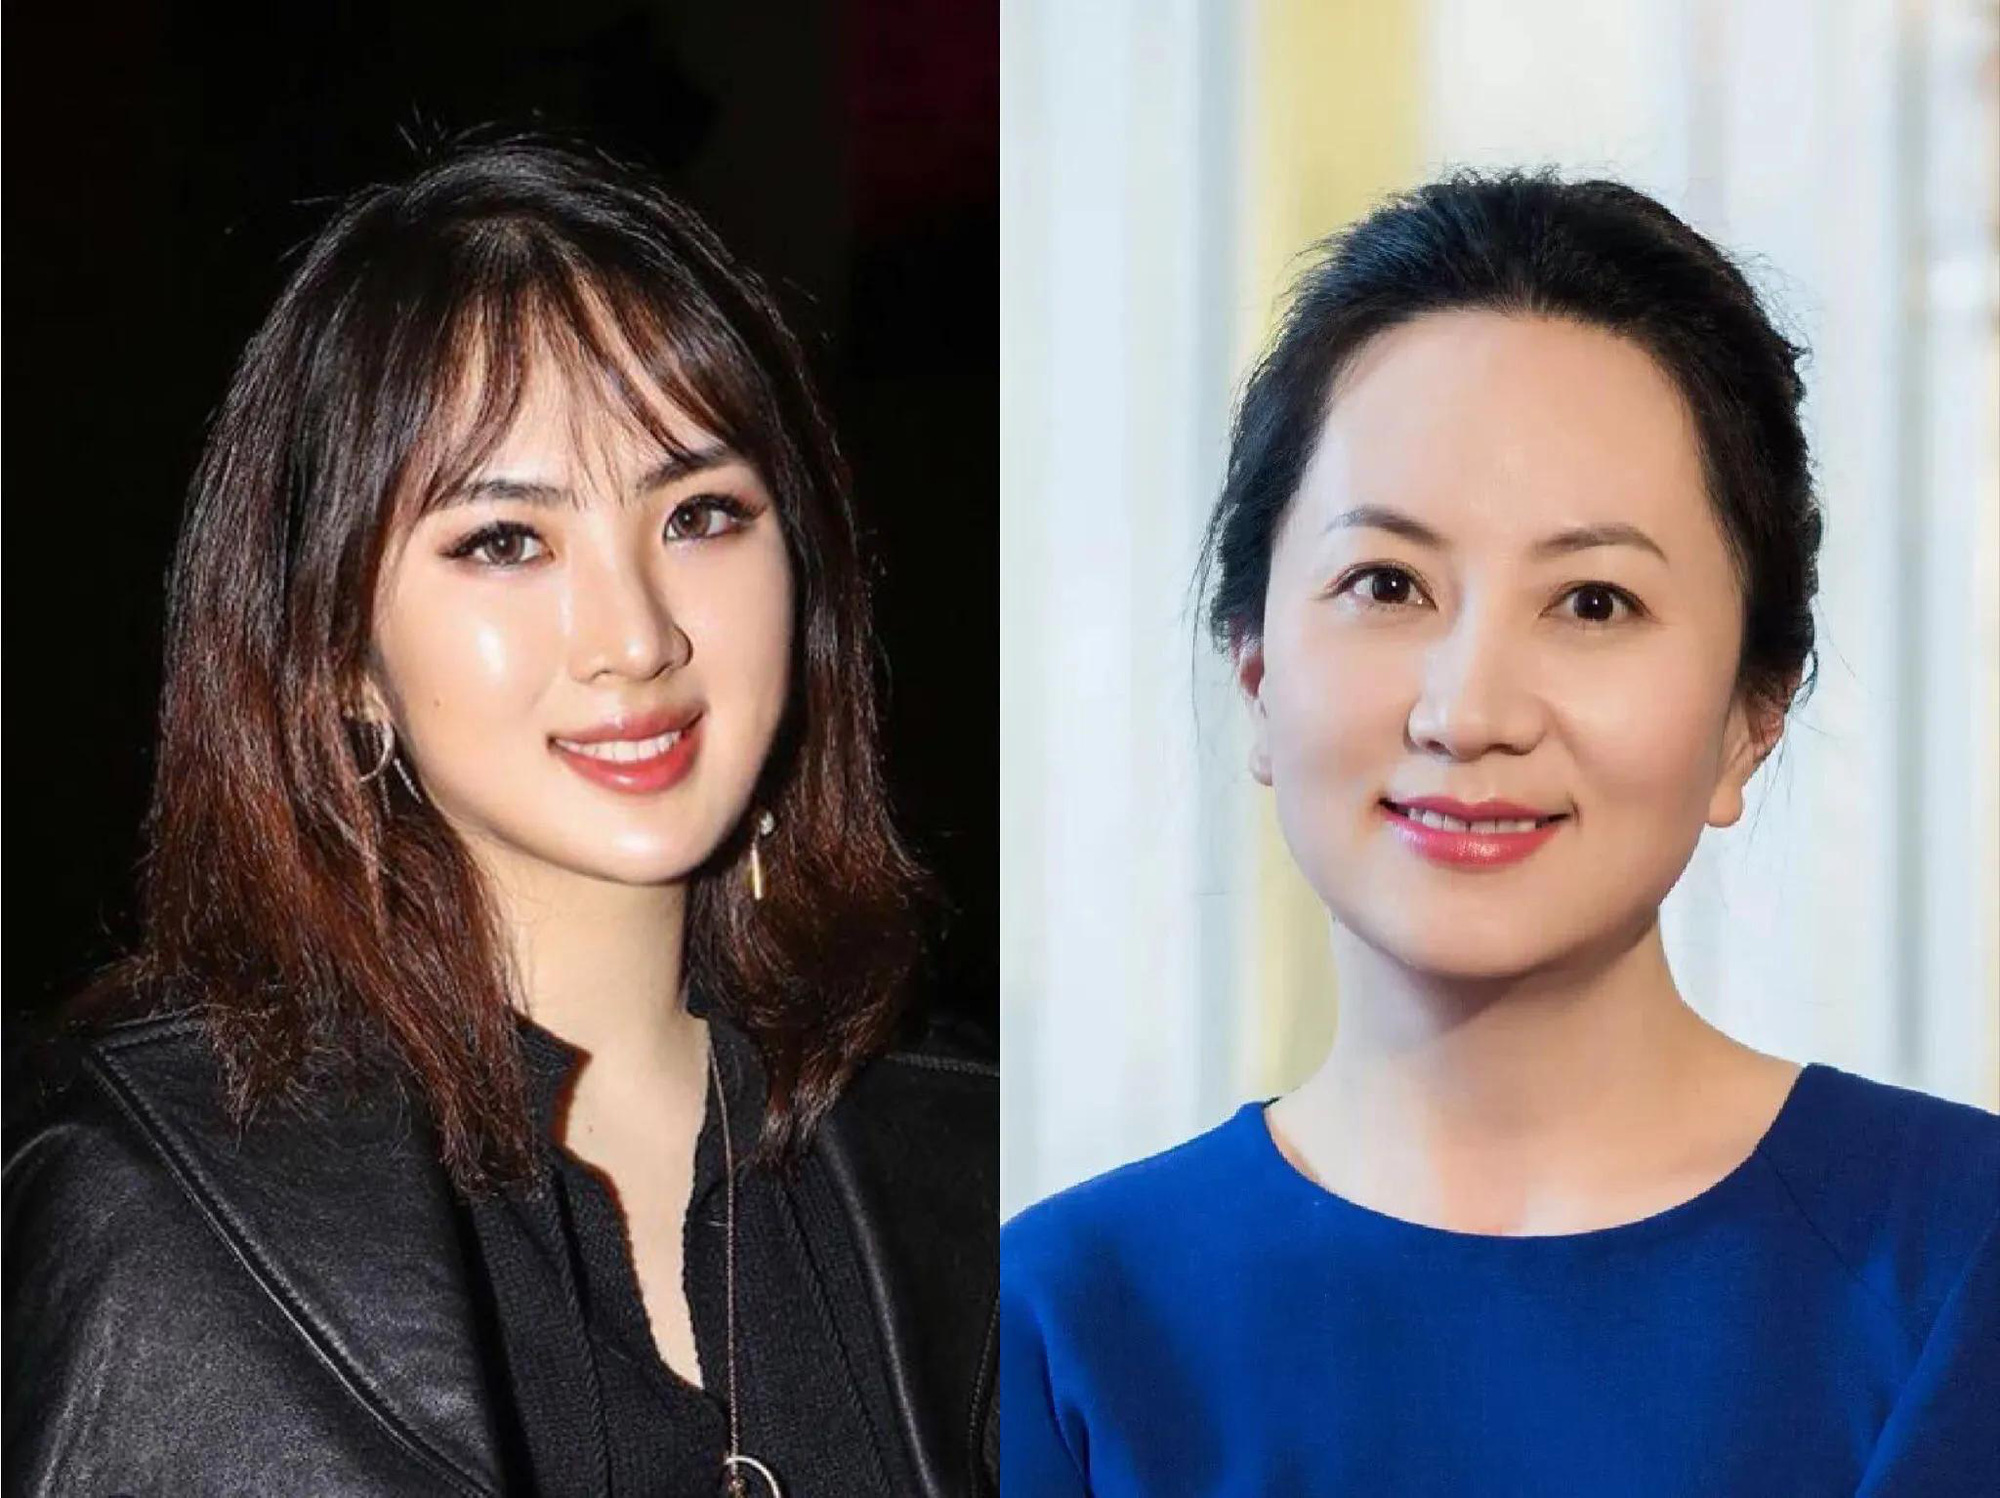 Soi học vấn của 2 công chúa Huawei: Người tốt nghiệp Harvard danh giá, người học trường làng nhàng, bị từ chối du học từ vòng gửi xe - Ảnh 5.